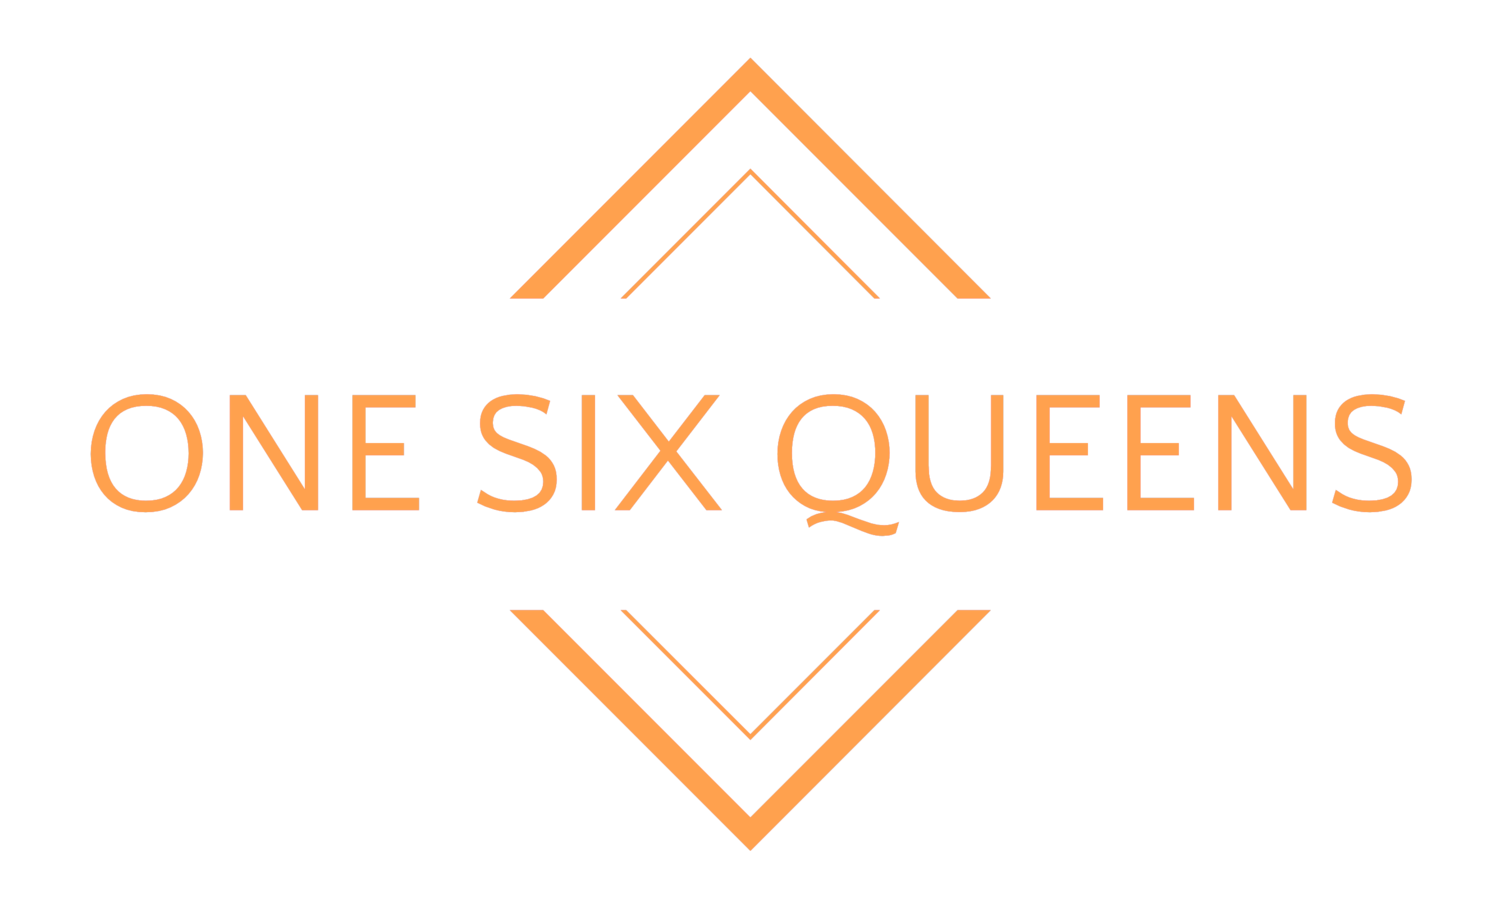 One Six Queens